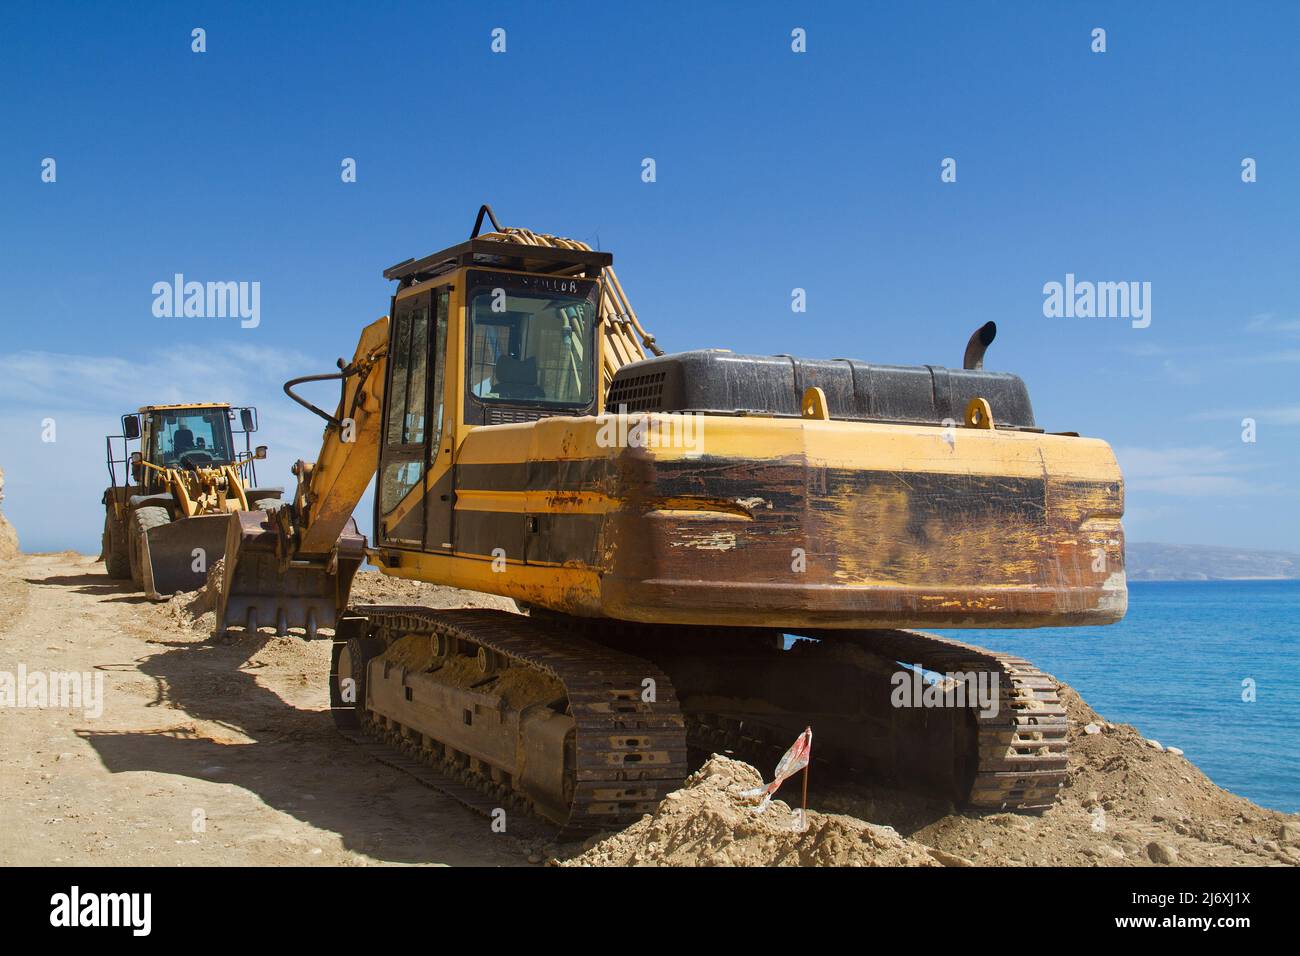 Escavatore cingolato giallo che lavora per riparare una strada in montagna vicino al mare Foto Stock